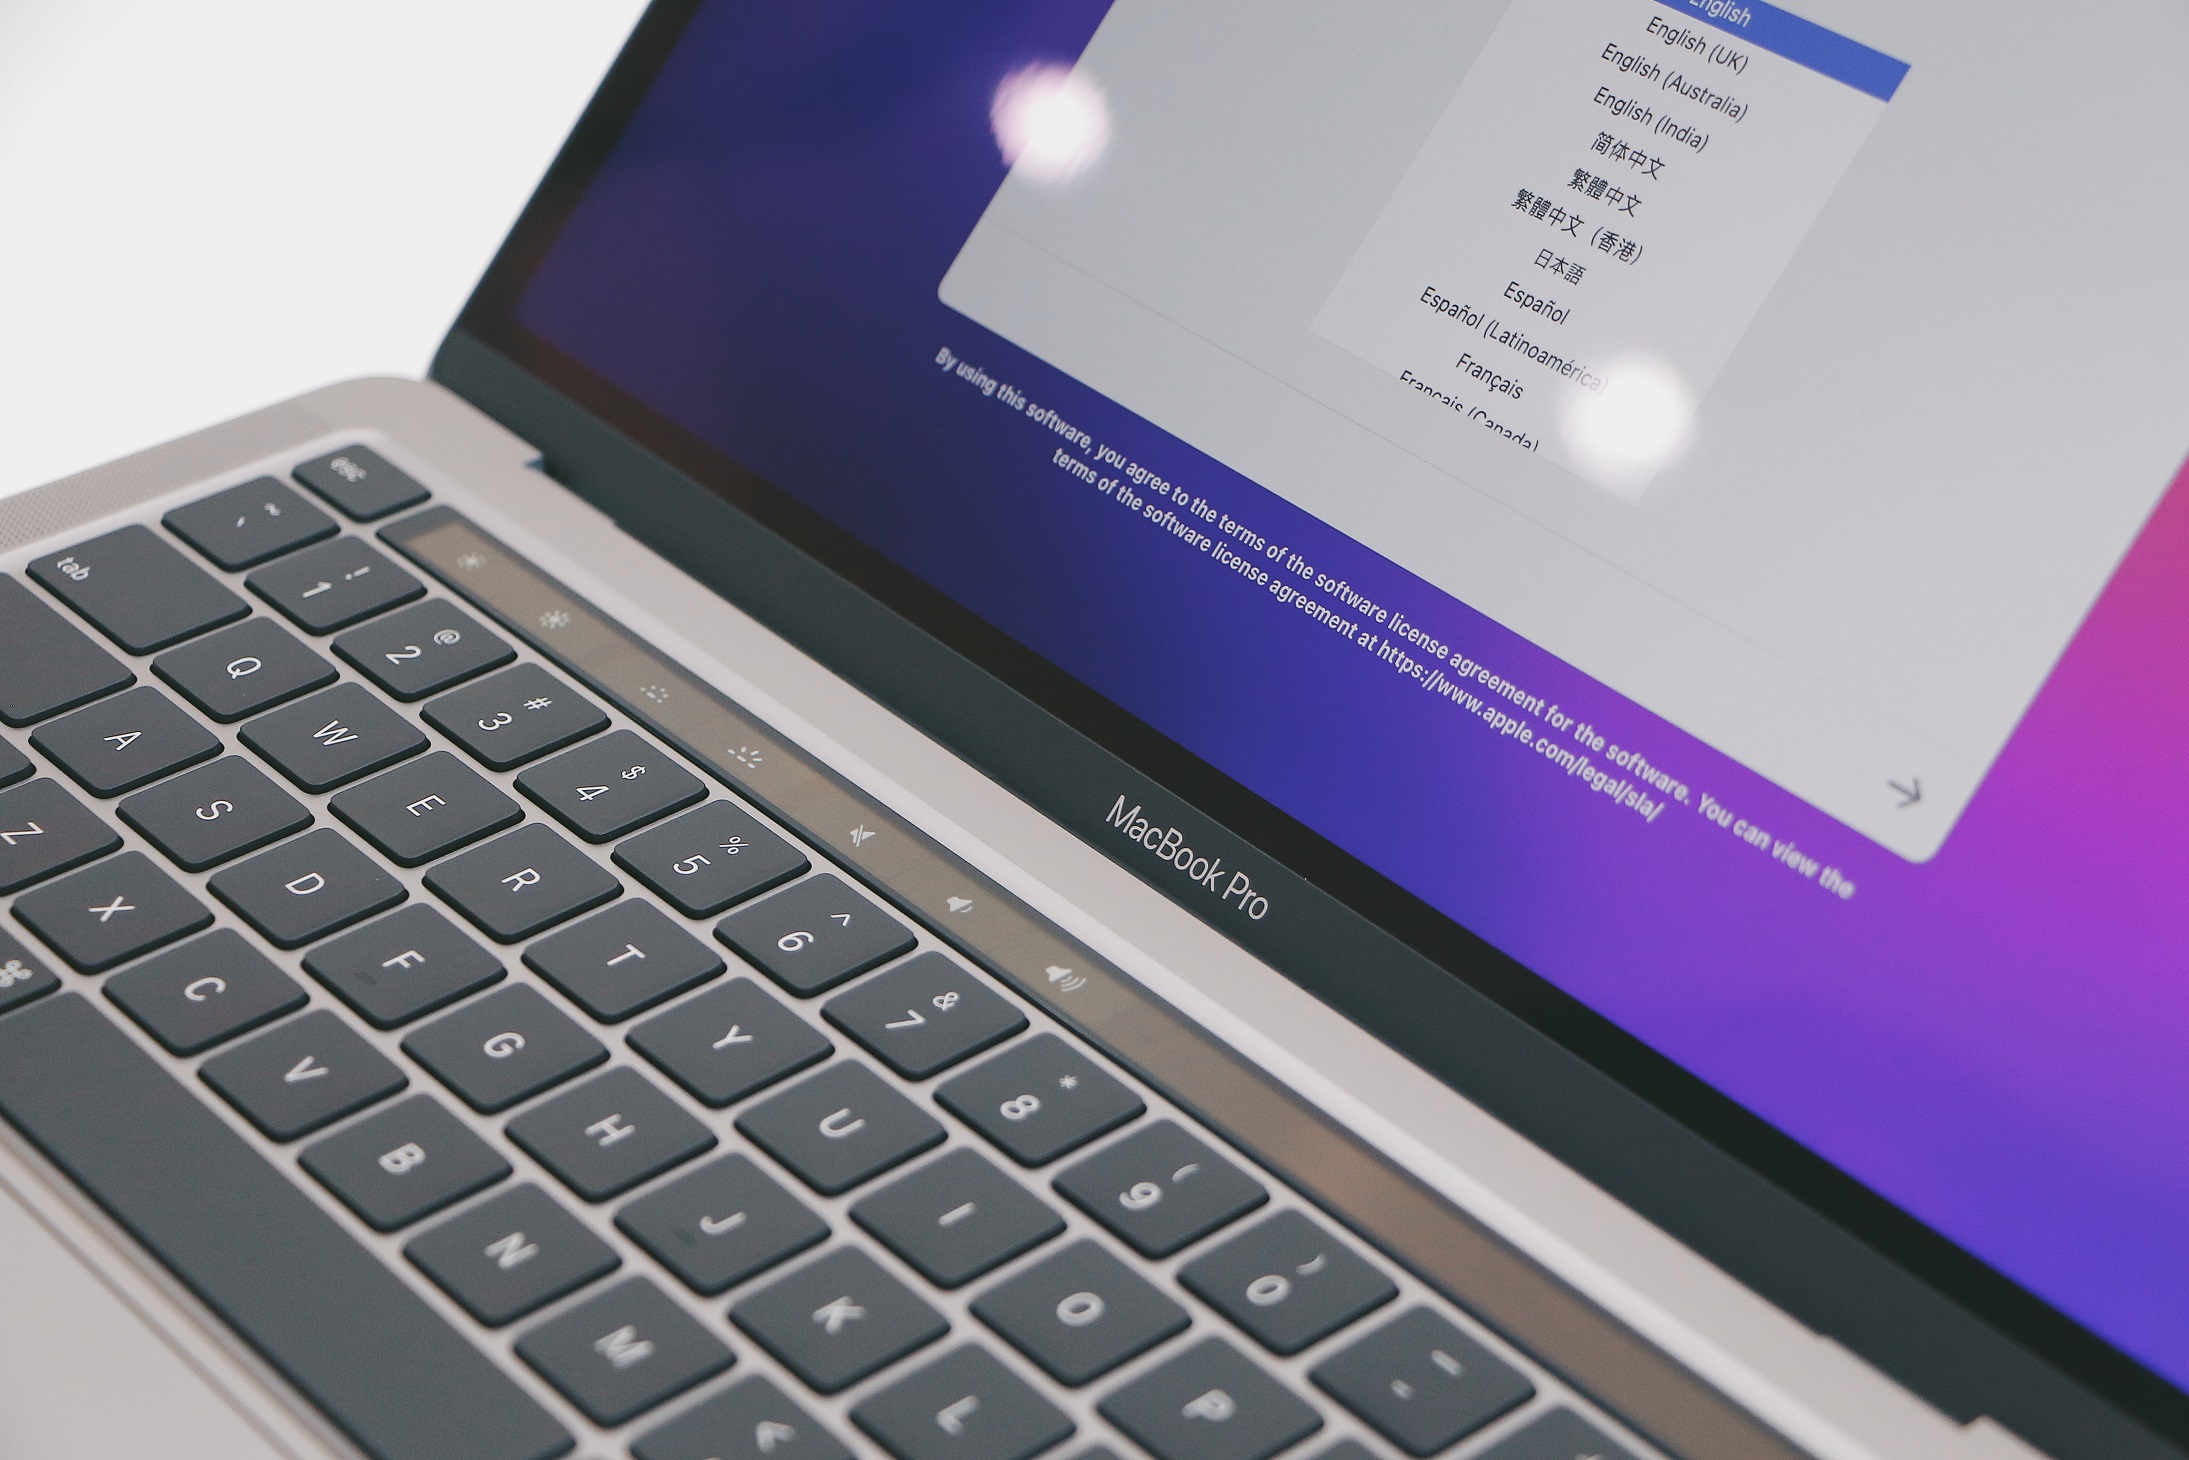 FPT Shop bất ngờ mở bán MacBook Pro M2 2022, giá từ 35,99 triệu đồng - IMG 8657